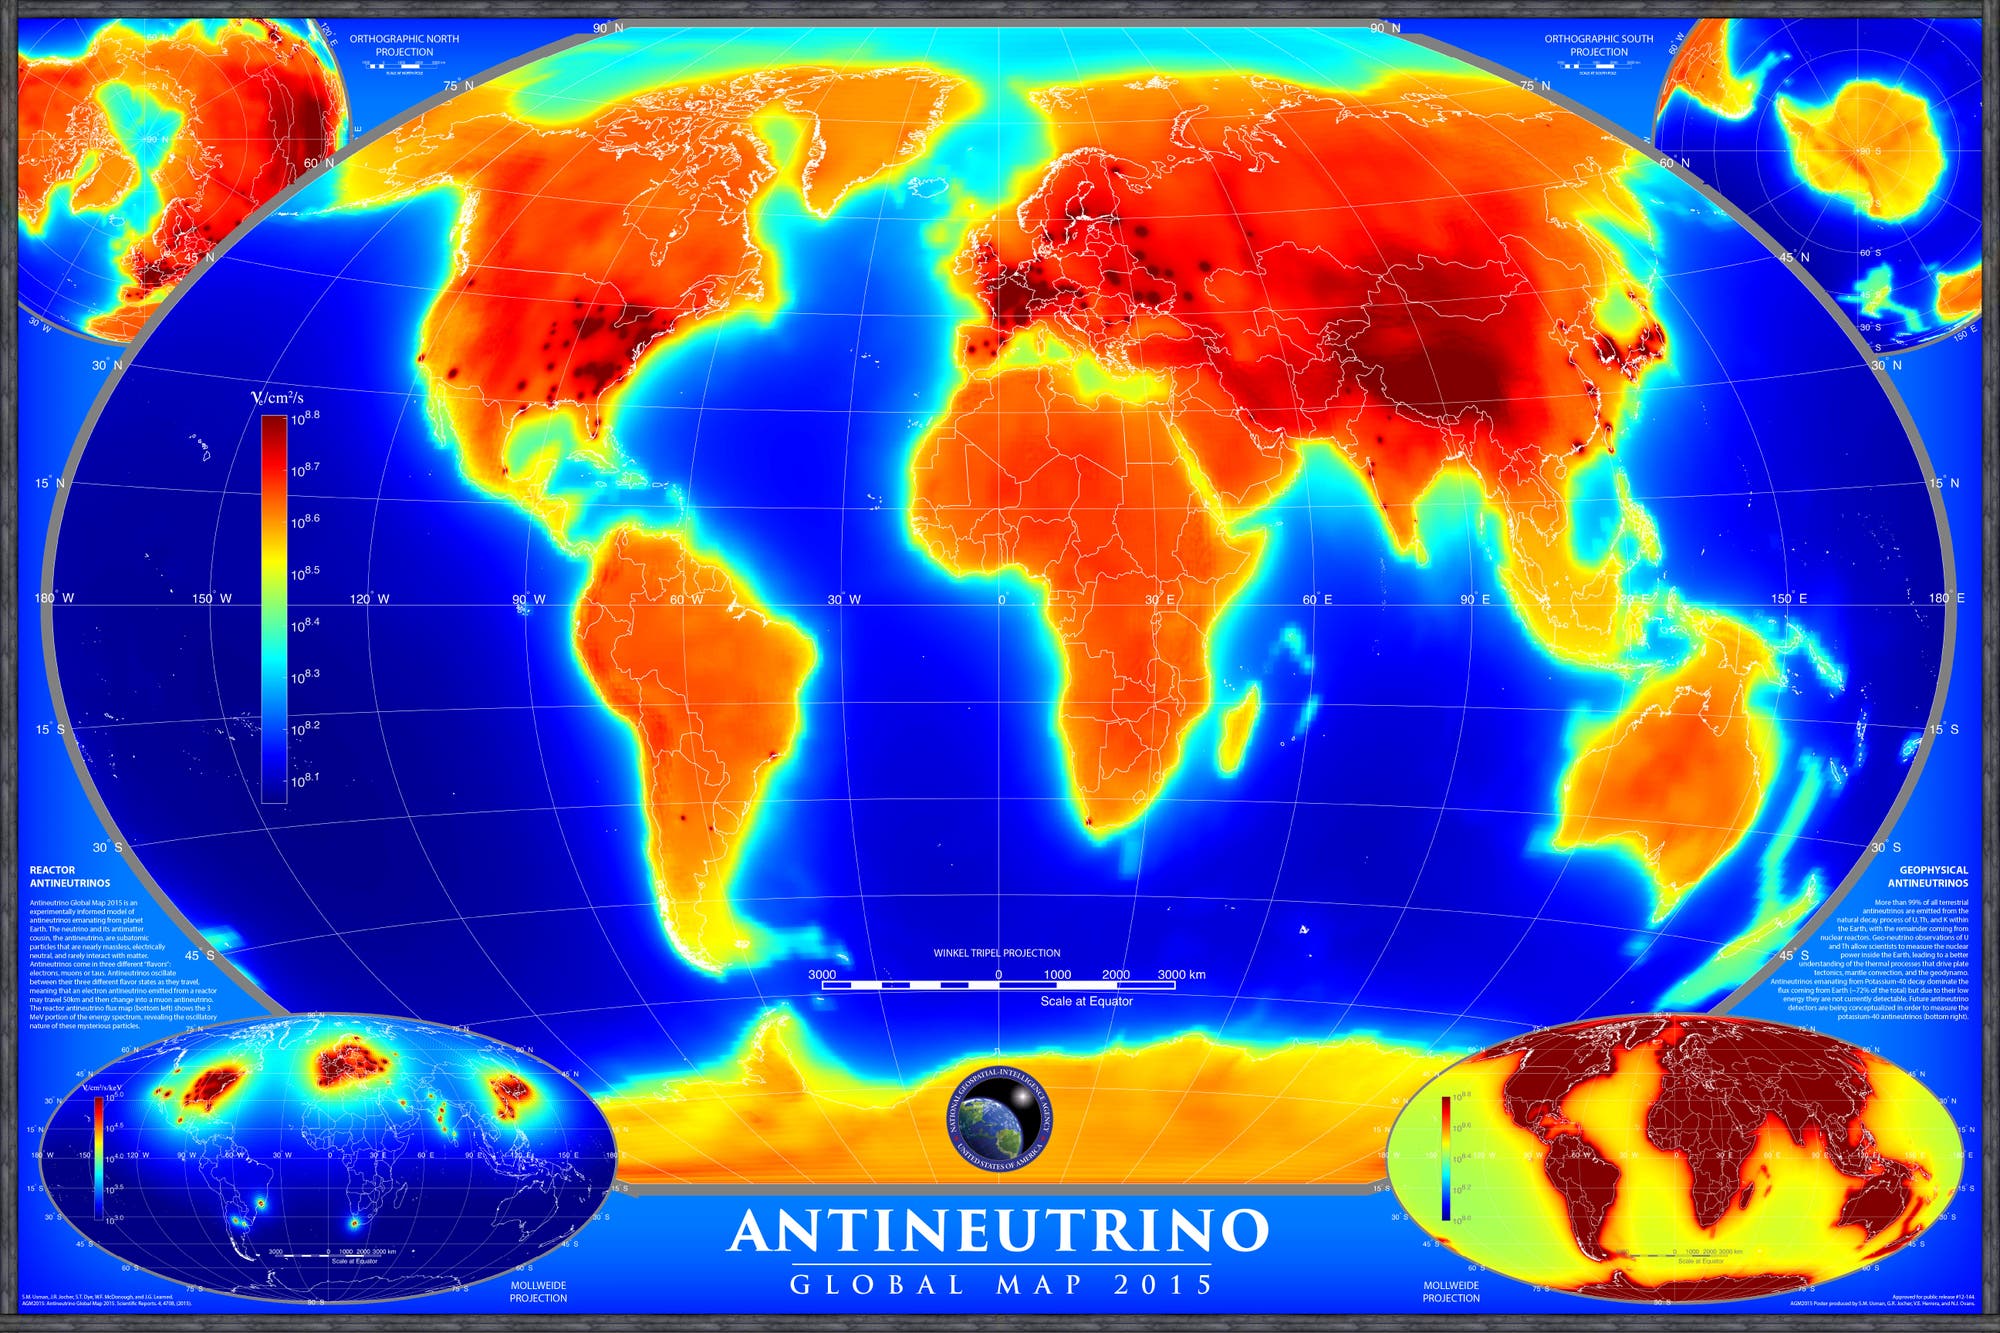 Weltkarte der Antineutrino-Emissionen